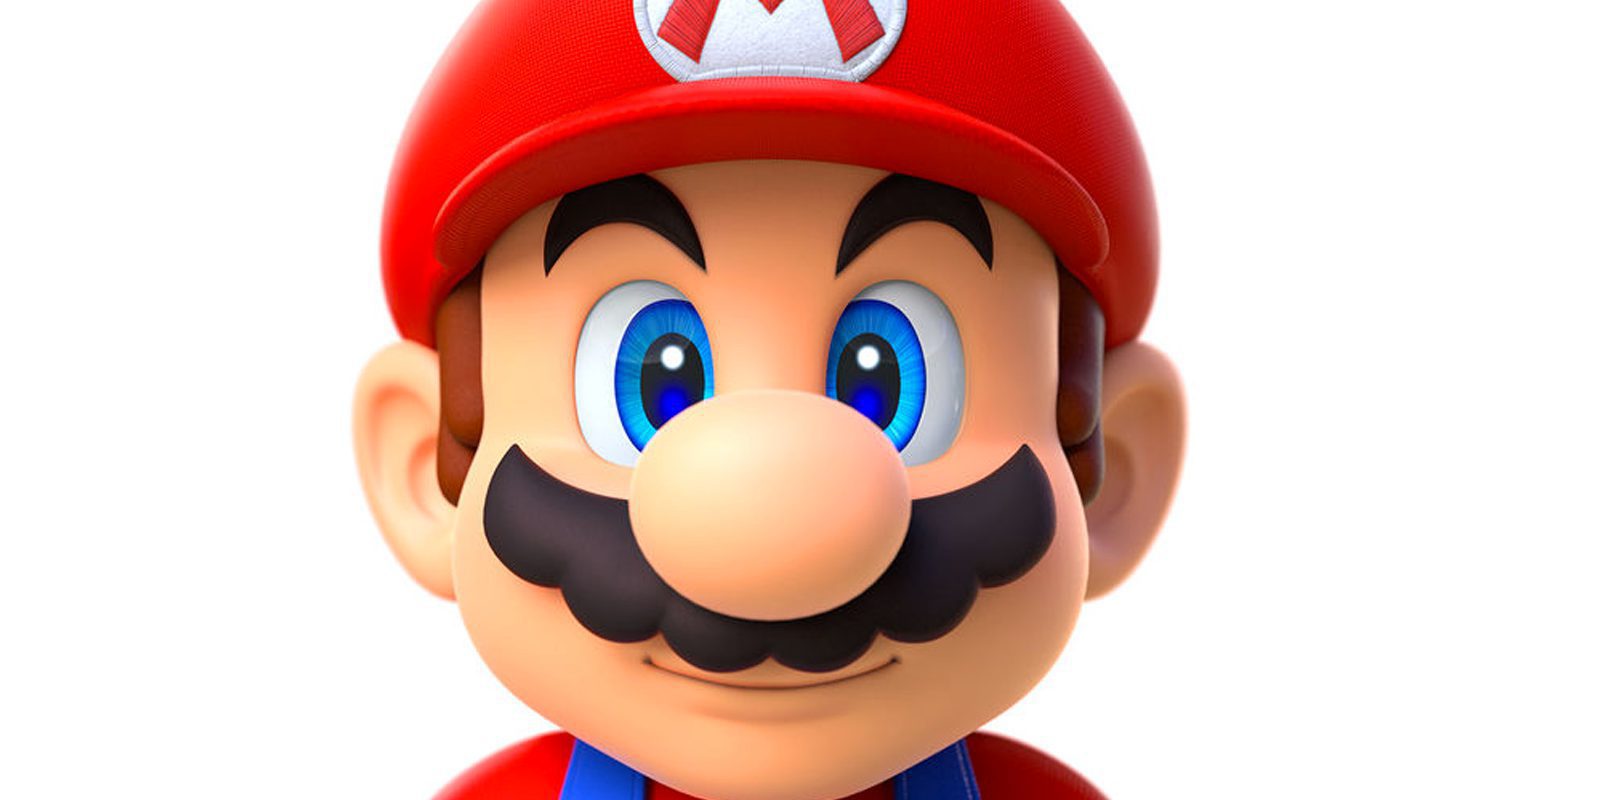 Más de 20 millones de usuarios de iPhone esperan impacientes 'Super Mario Run'